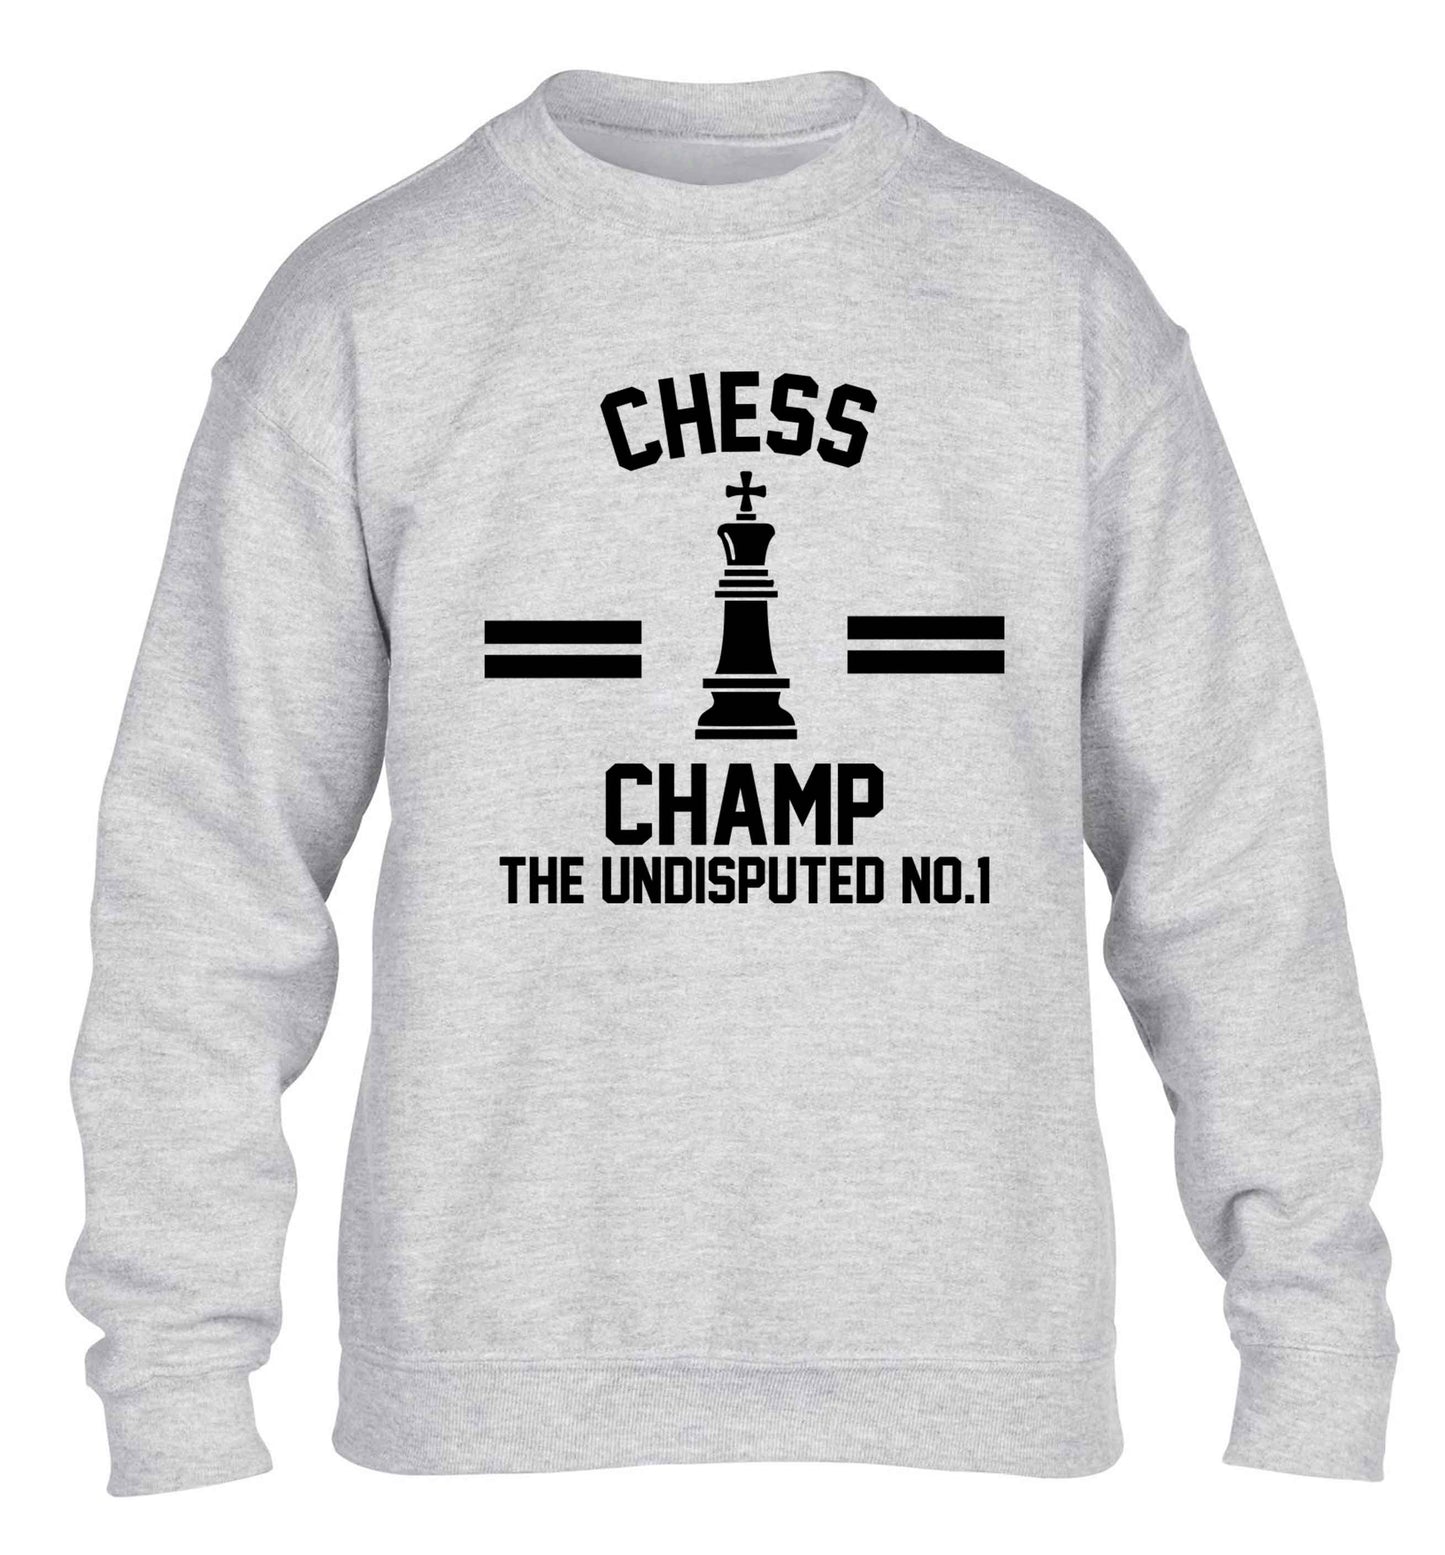 Undisputed chess championship no.1  children's grey sweater 12-13 Years